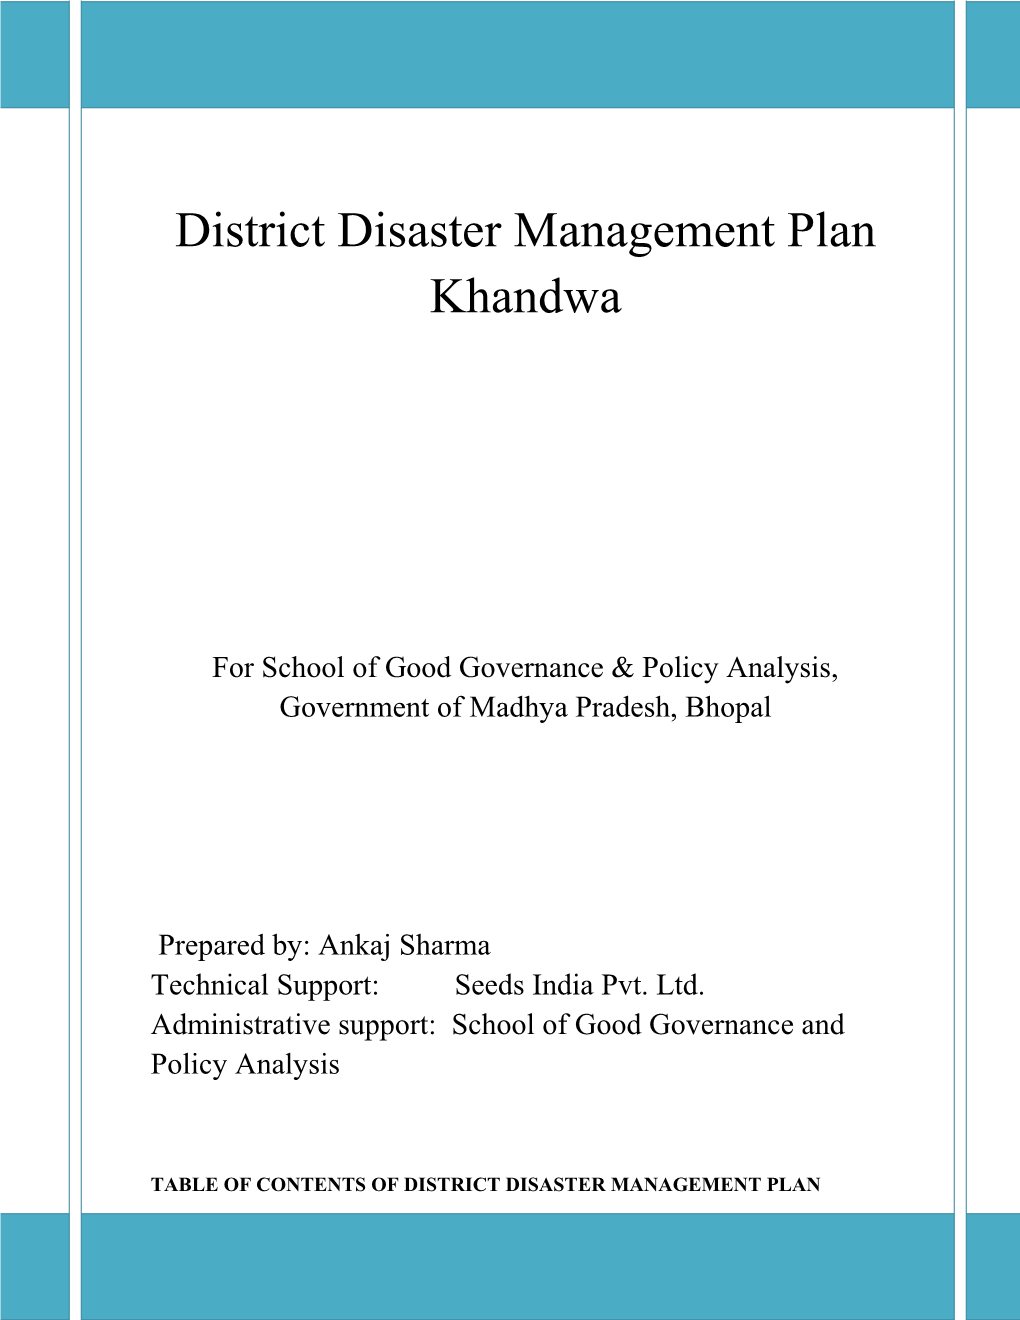 District Disaster Management Plan Khandwa